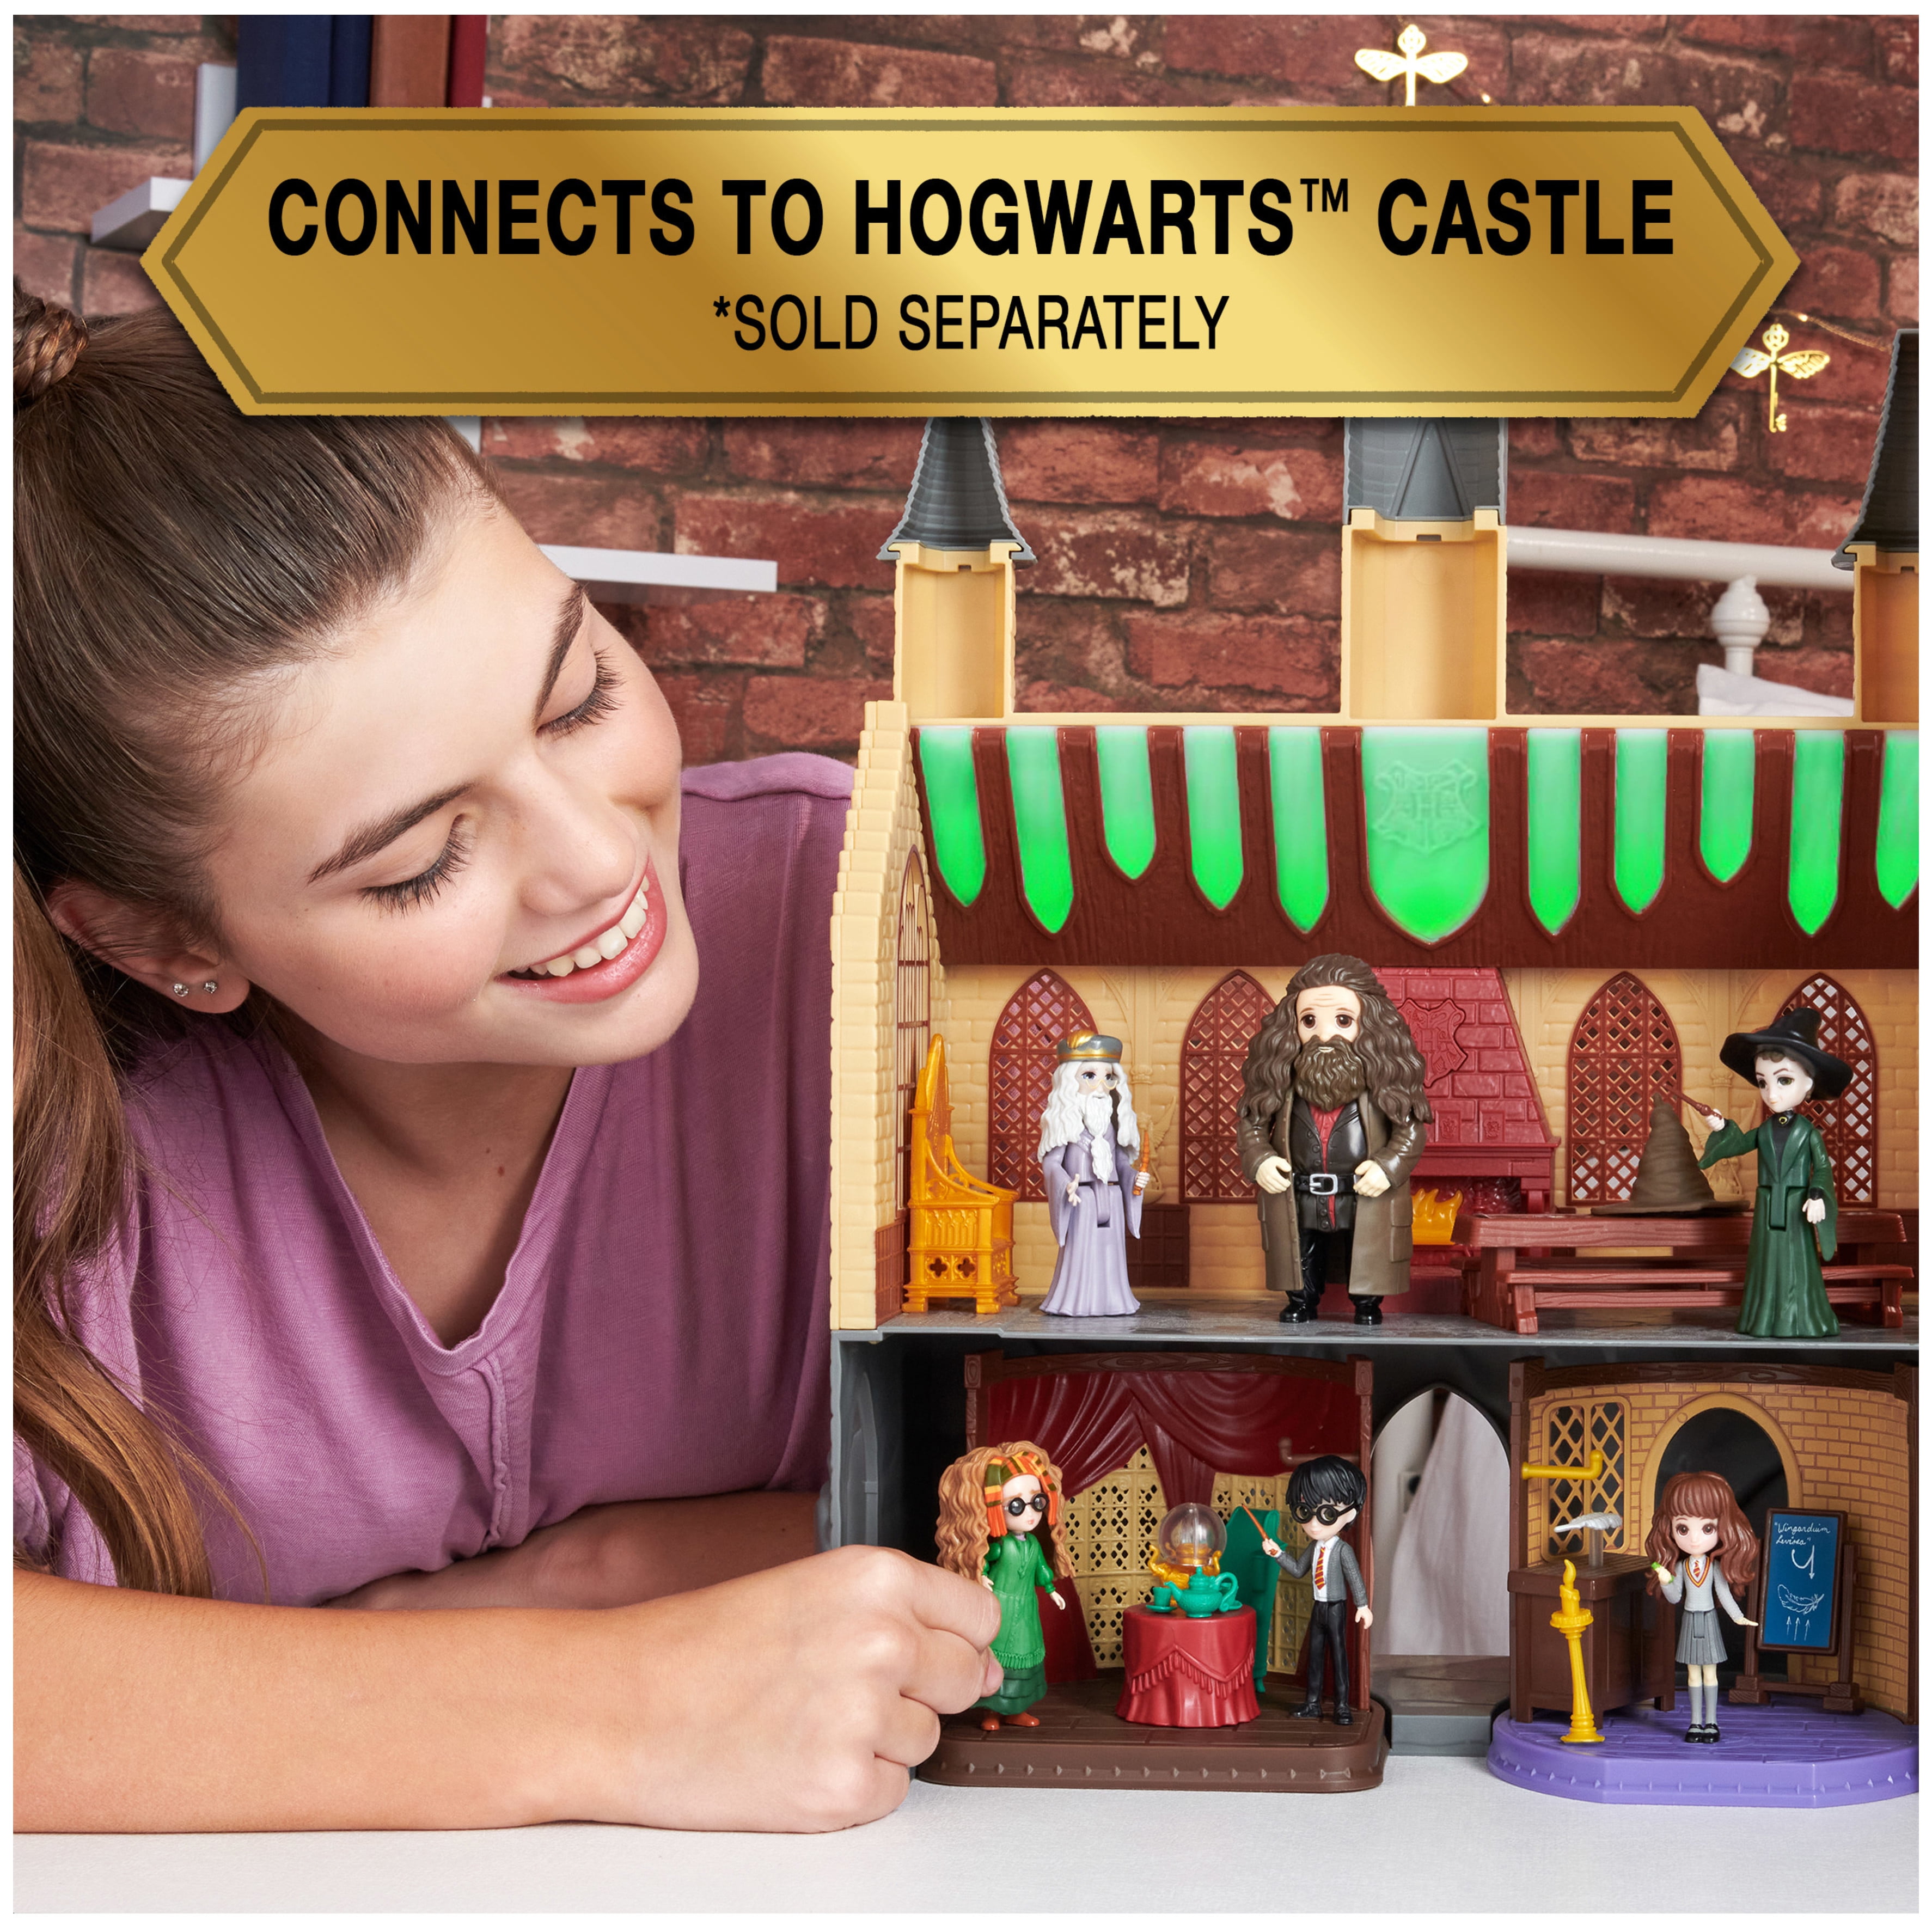 Wizarding World Harry Potter, Magical Minis, Classe de divination de  Poudlard avec 2 figurines exclusives et 6 accessoires, jouets pour enfants  à partir de 6 ans Magical Minis figurines 